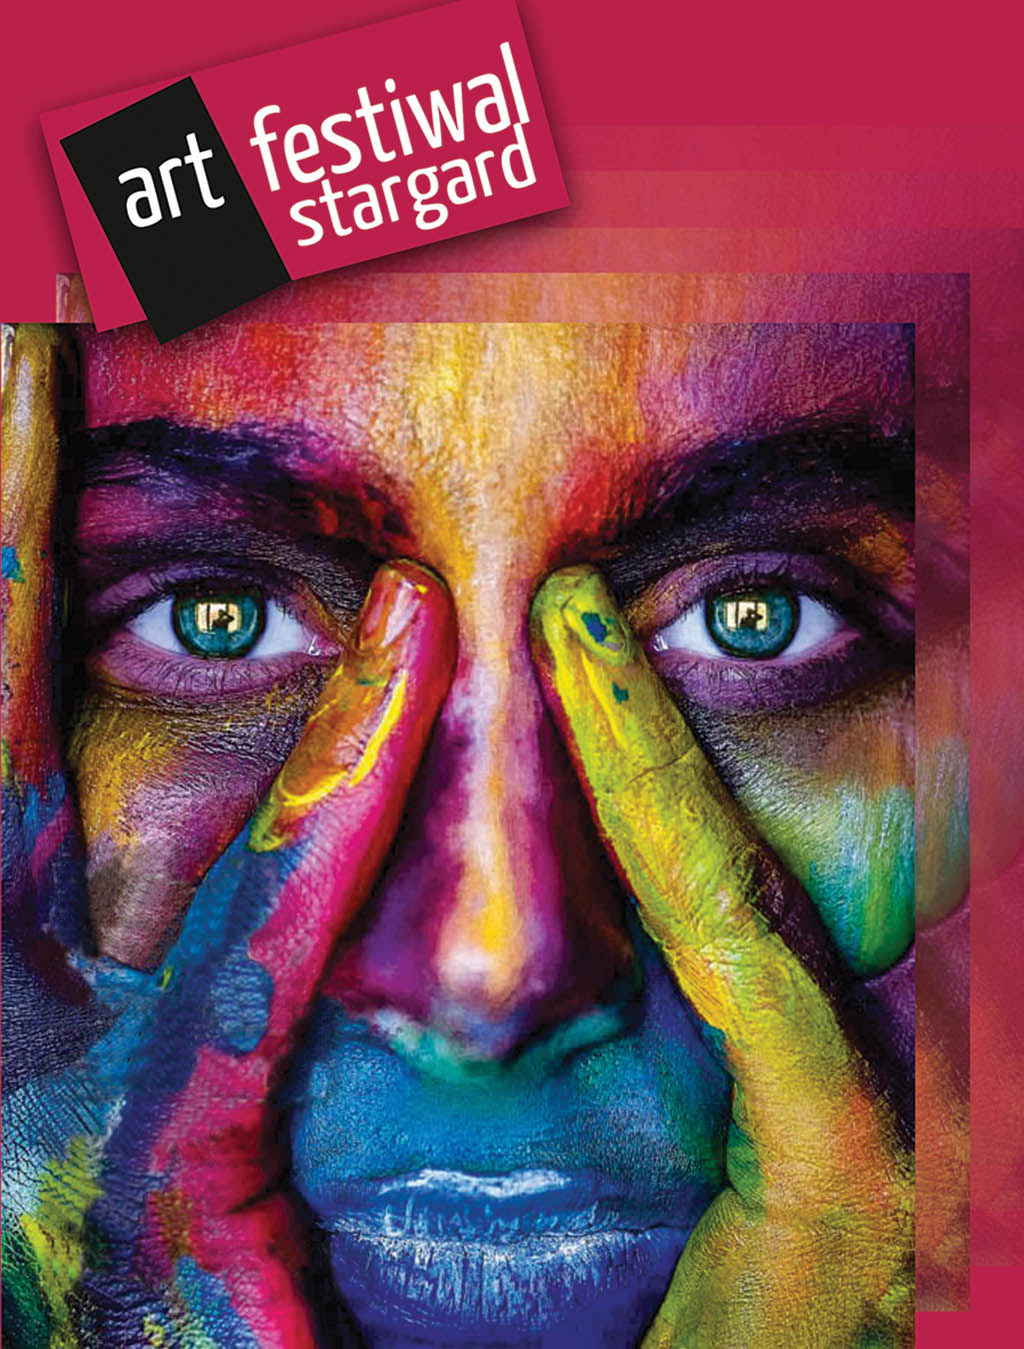 Art Festiwal Stargard